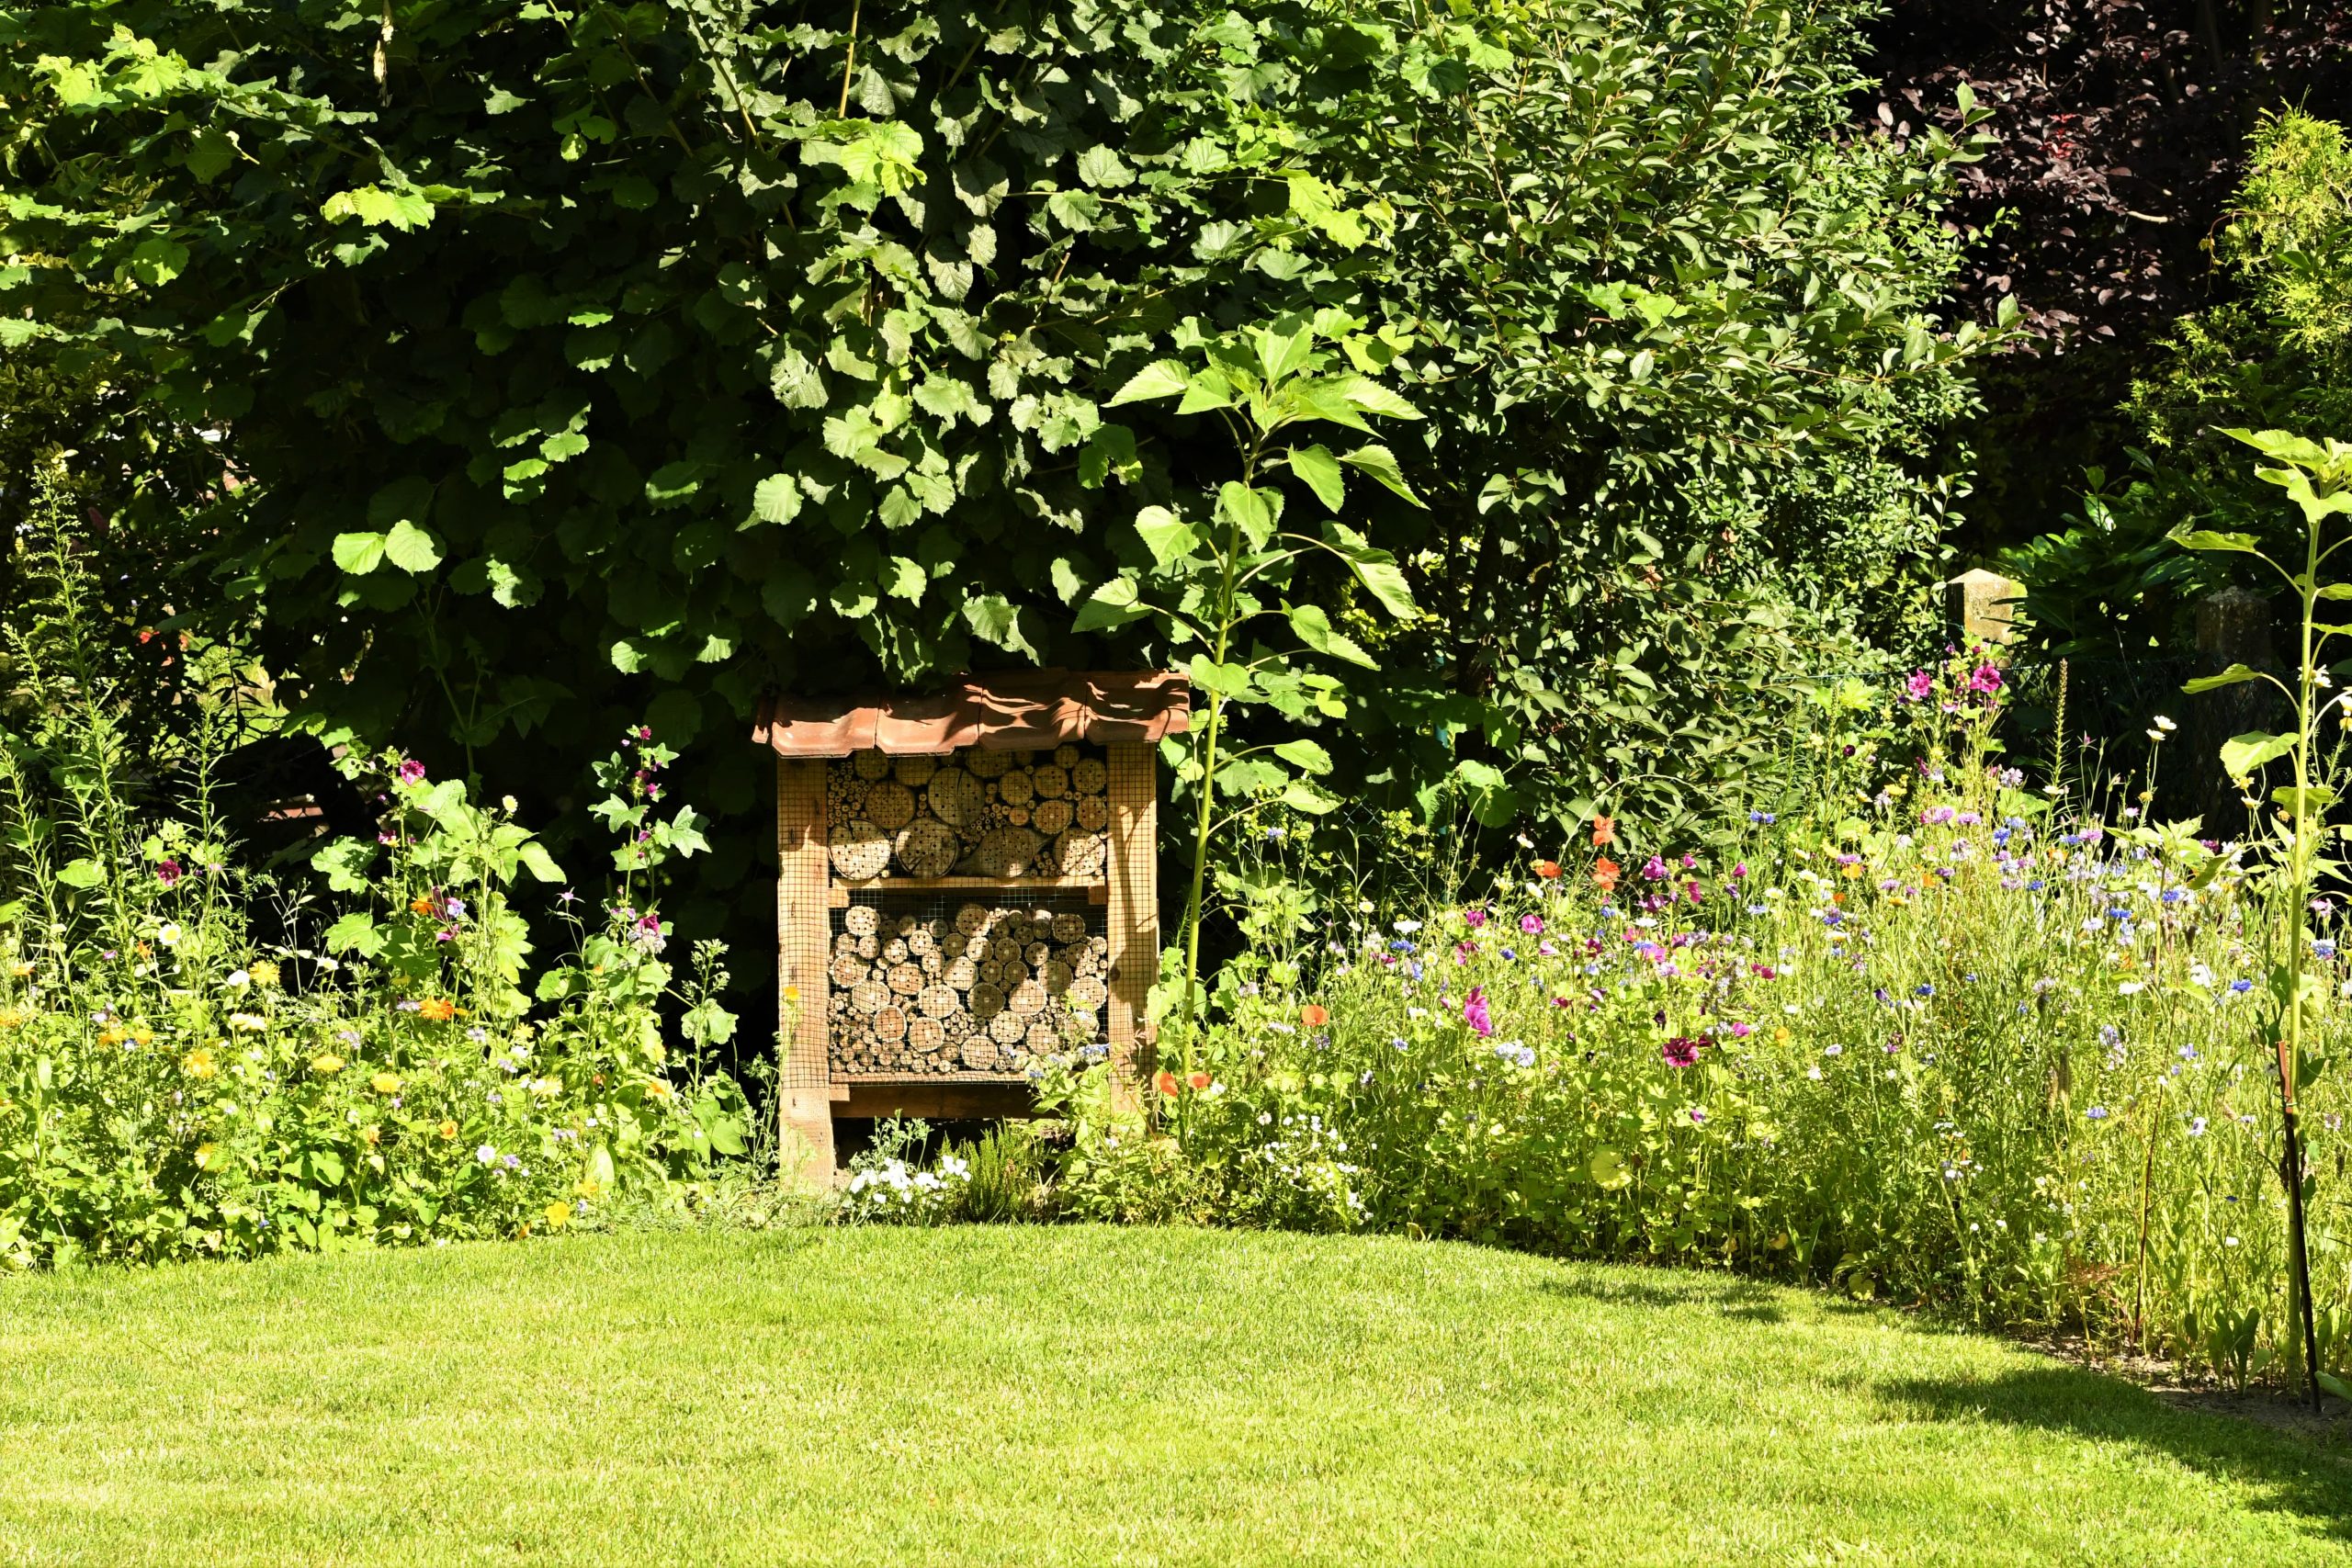 Knapp am Podest vorbei: David Galloway beteiligte sich mit diesem Foto am Wettbewerb „Ahlens schönste Gärten“.